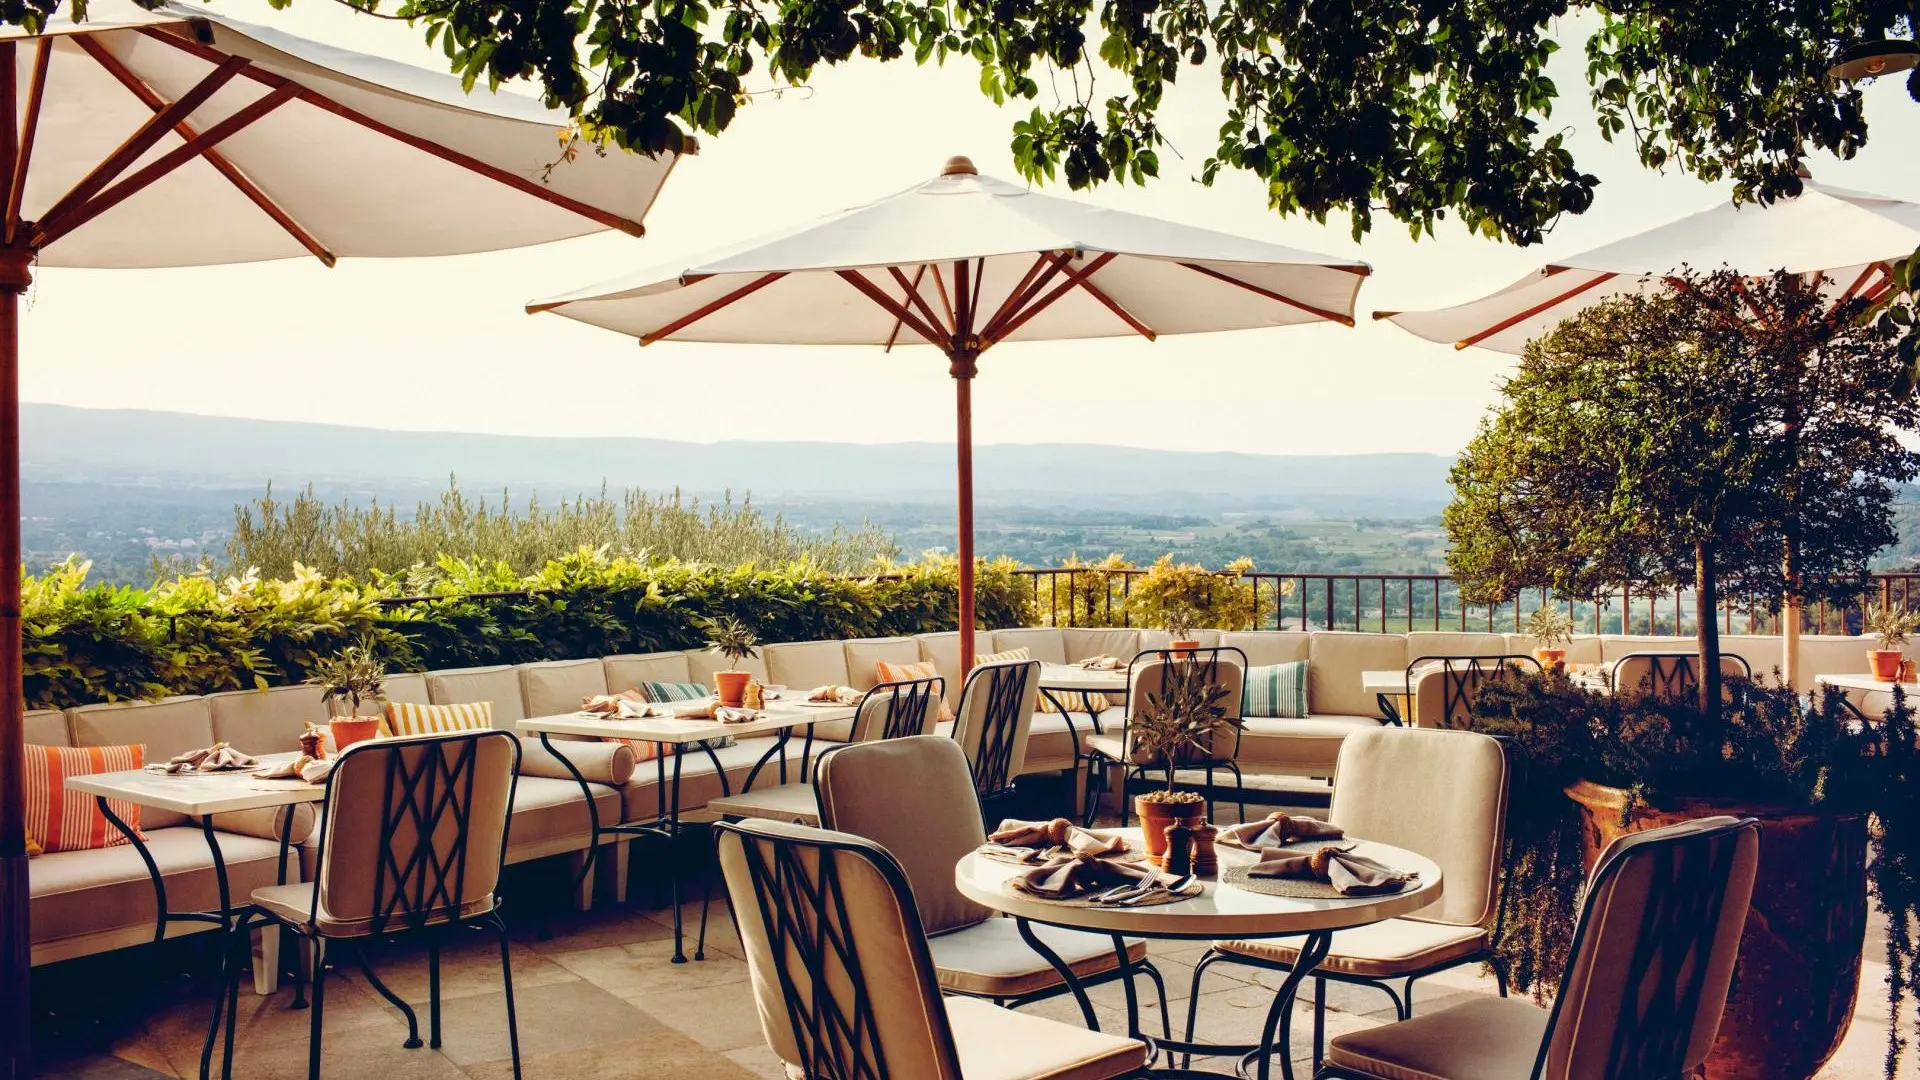 Hotel review Restaurants & Bars' - Hôtel Crillon le Brave - Provence - 5